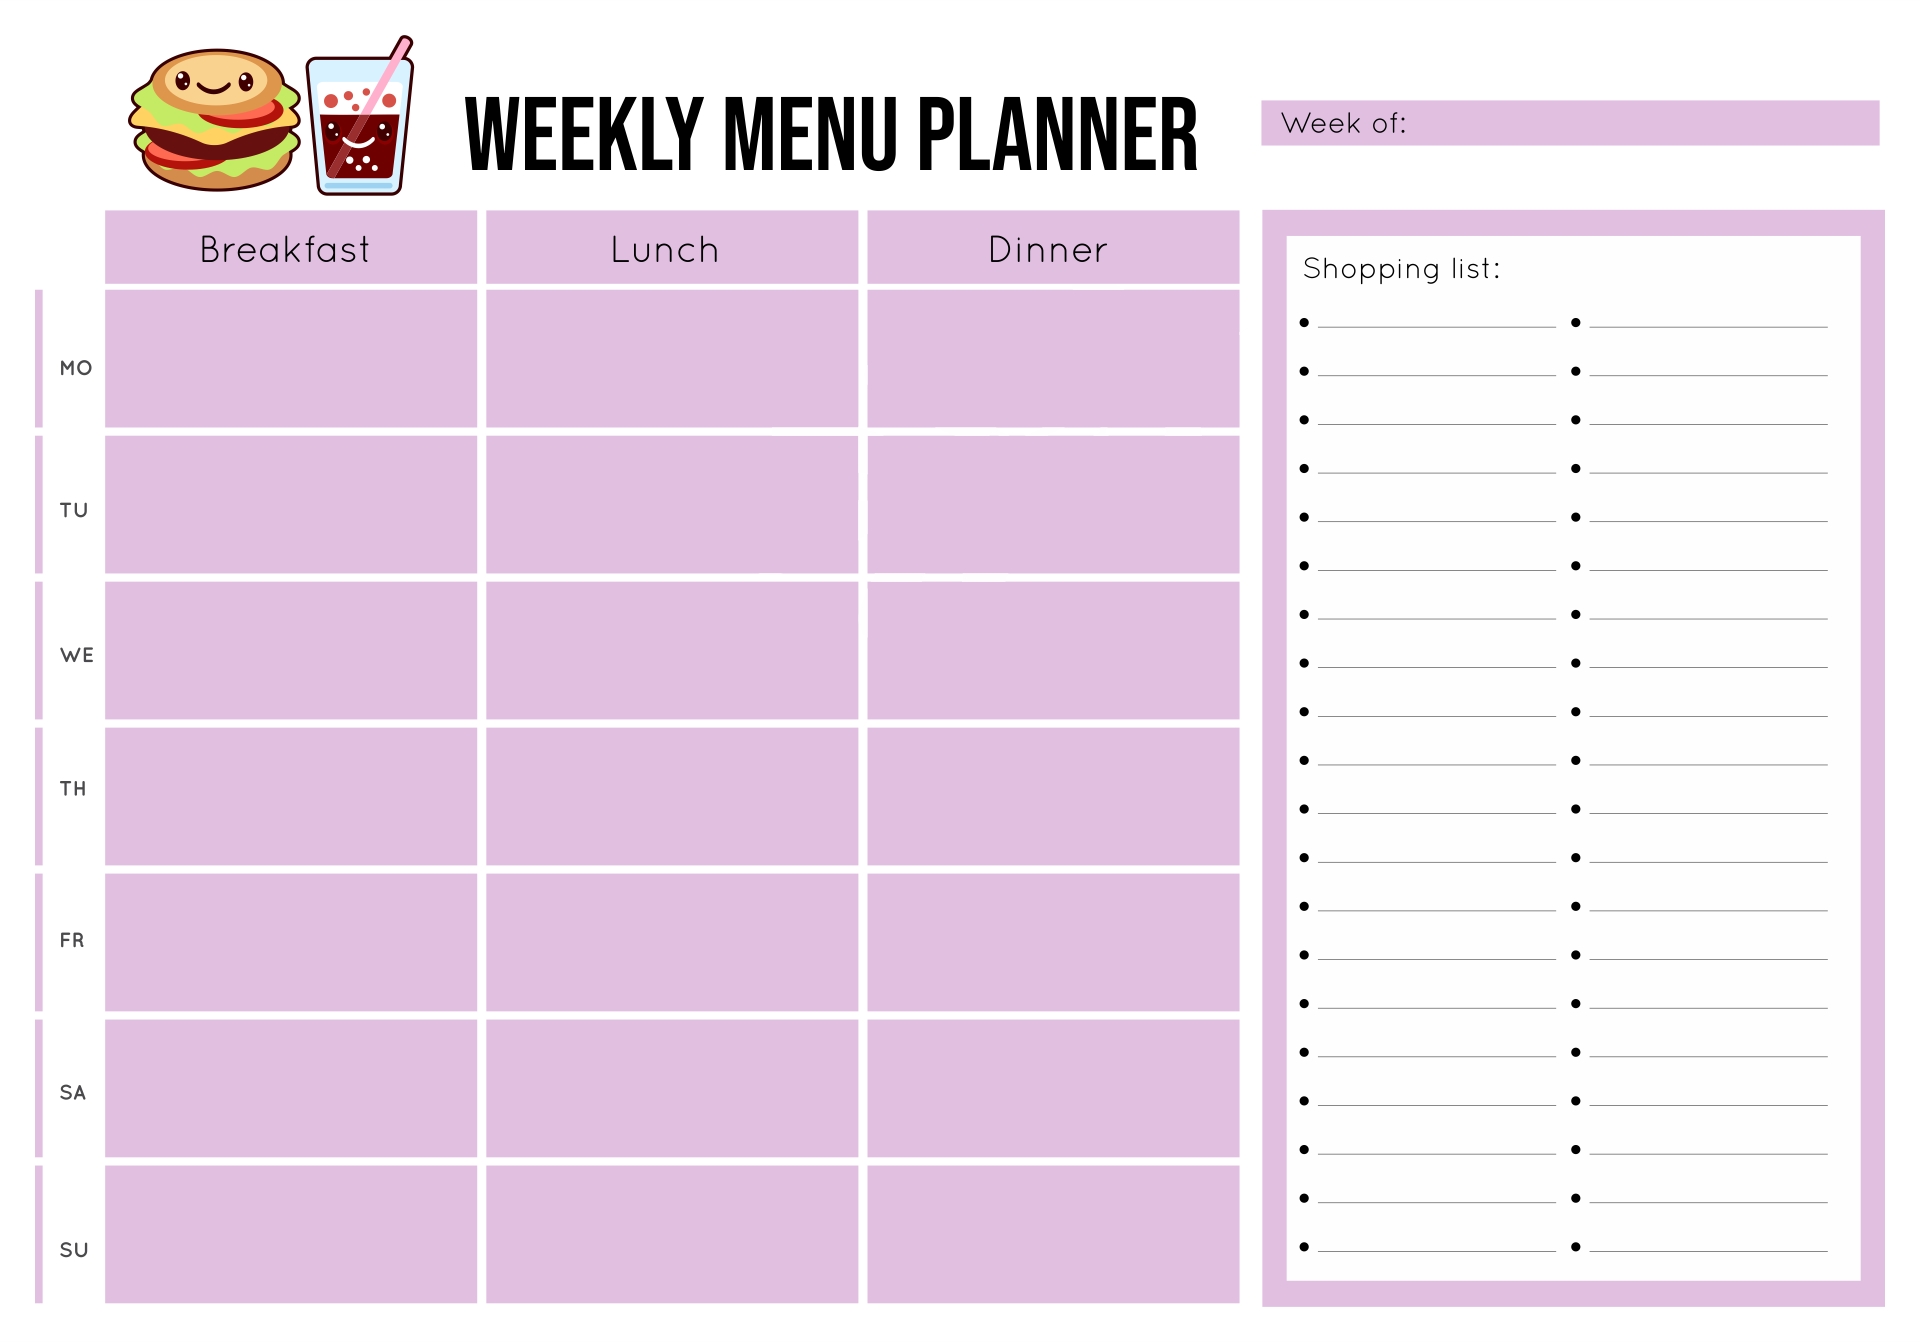 Menu Planning Template Free Printable : Meal Planning Template - Free within Menu Planning Template Word